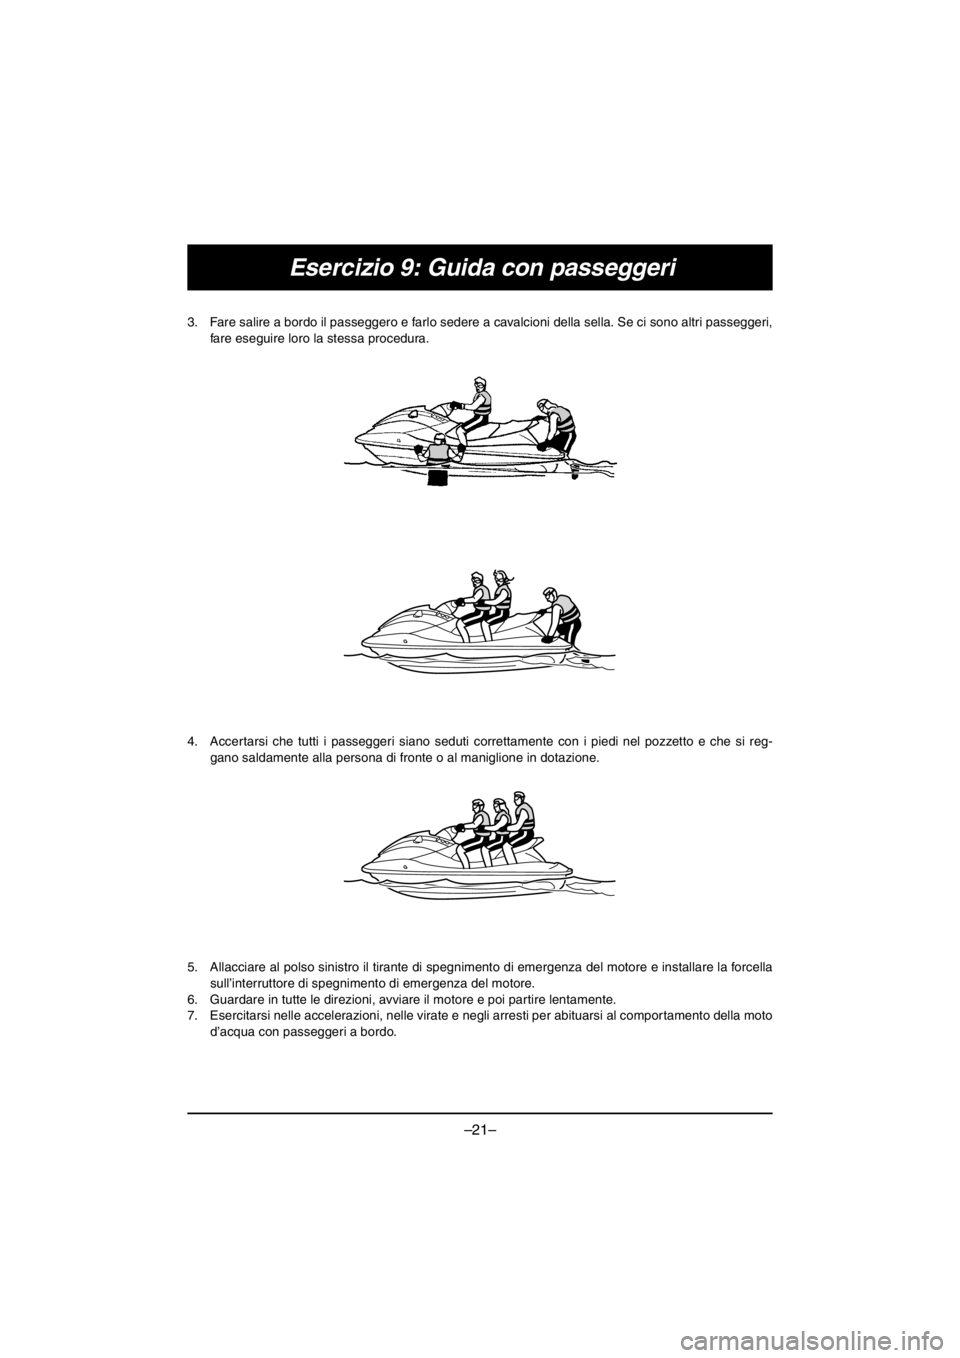 YAMAHA V1 2016  Manuale duso (in Italian) –21–
Esercizio 9: Guida con passeggeri
3. Fare salire a bordo il passeggero e farlo sedere a cavalcioni della sella. Se ci sono altri passeggeri,
fare eseguire loro la stessa procedura. 
4. Accert